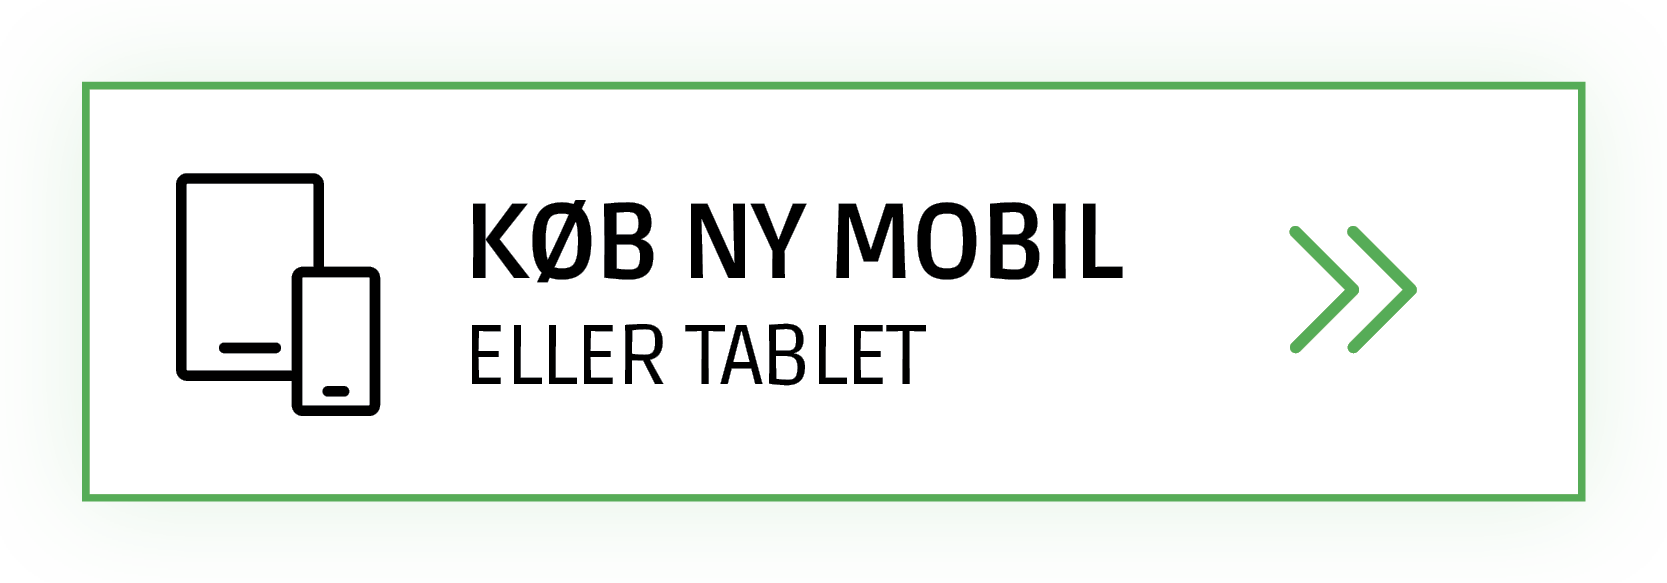 Køb ny mobil eller tablet